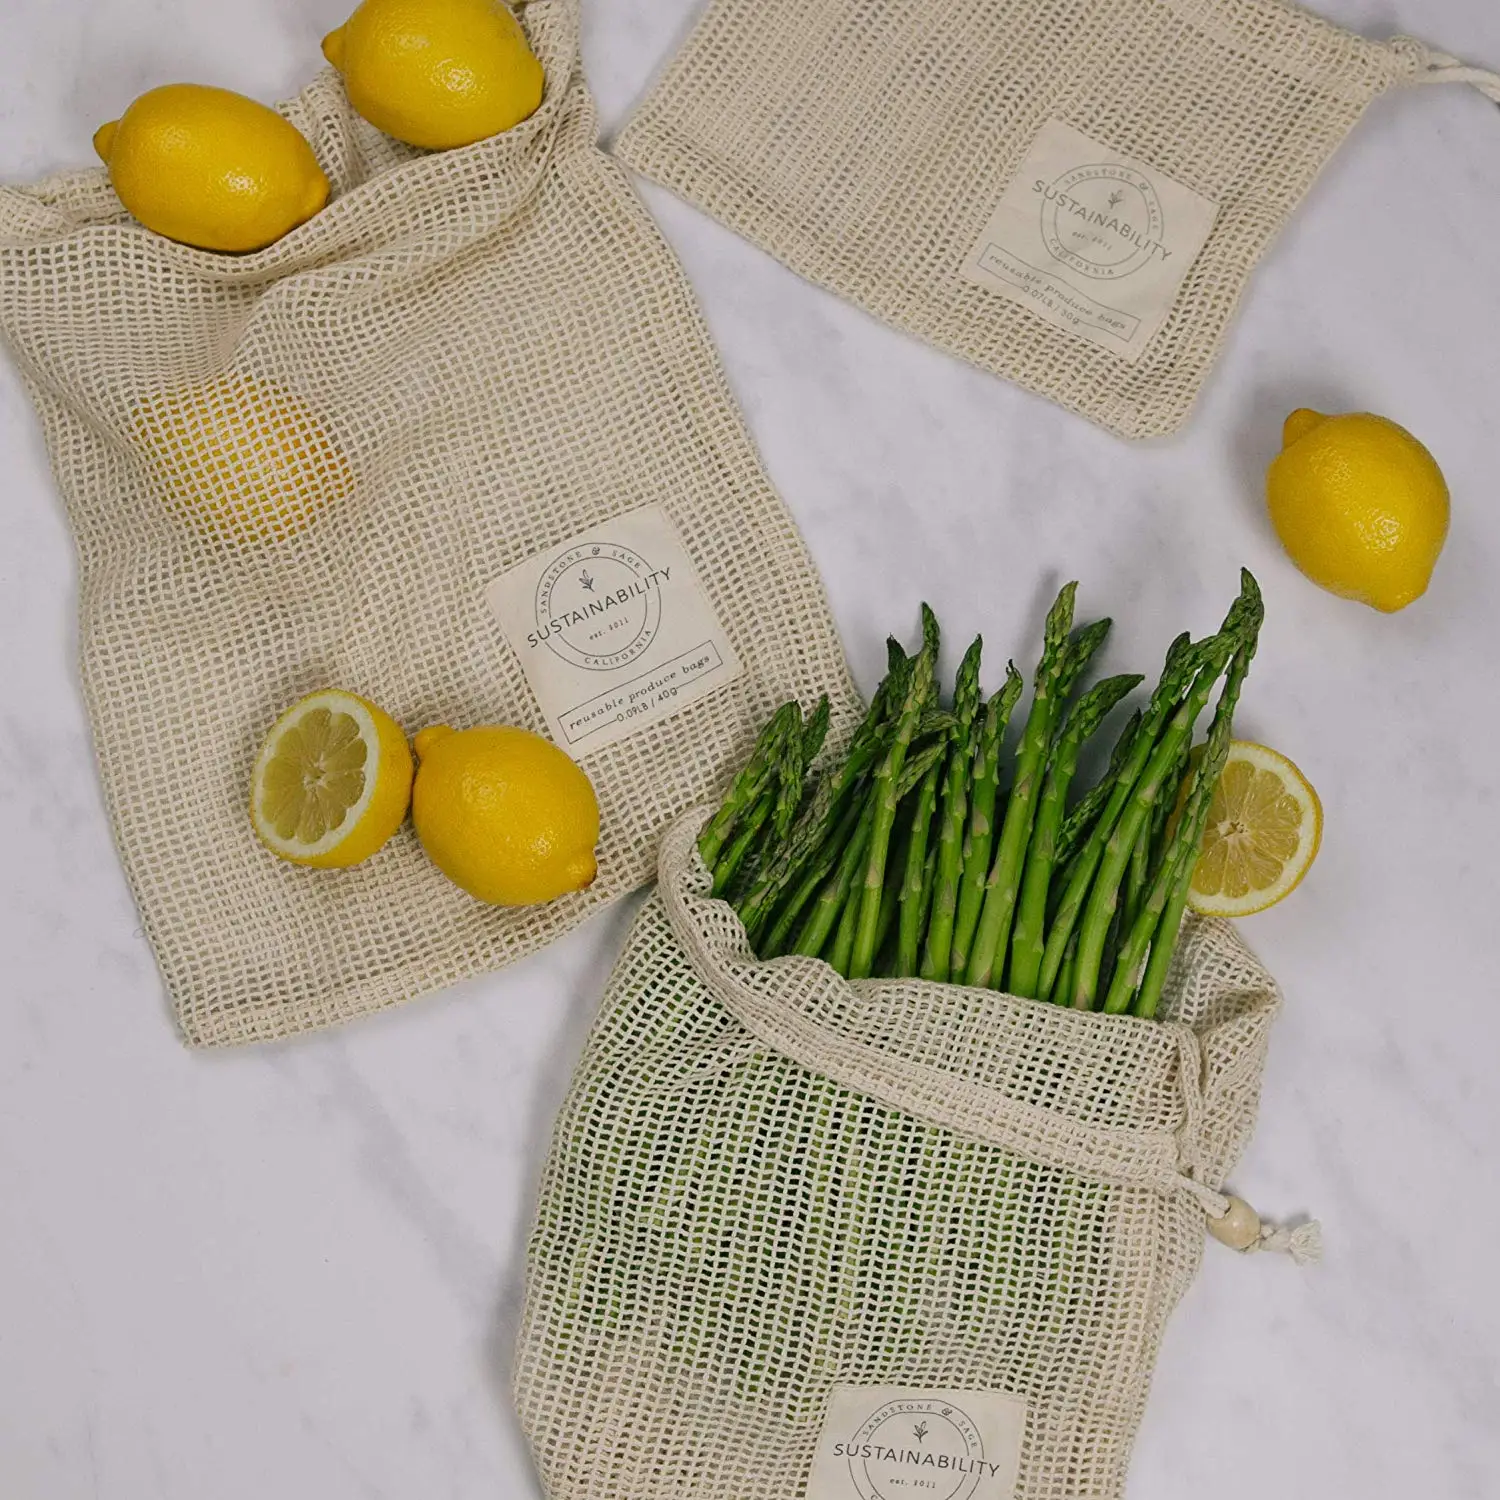 GOTS Certified Eco-friendly 100% Organic Cotton Muslin Mesh Produce Mesh Net Shopping Cooking Bag